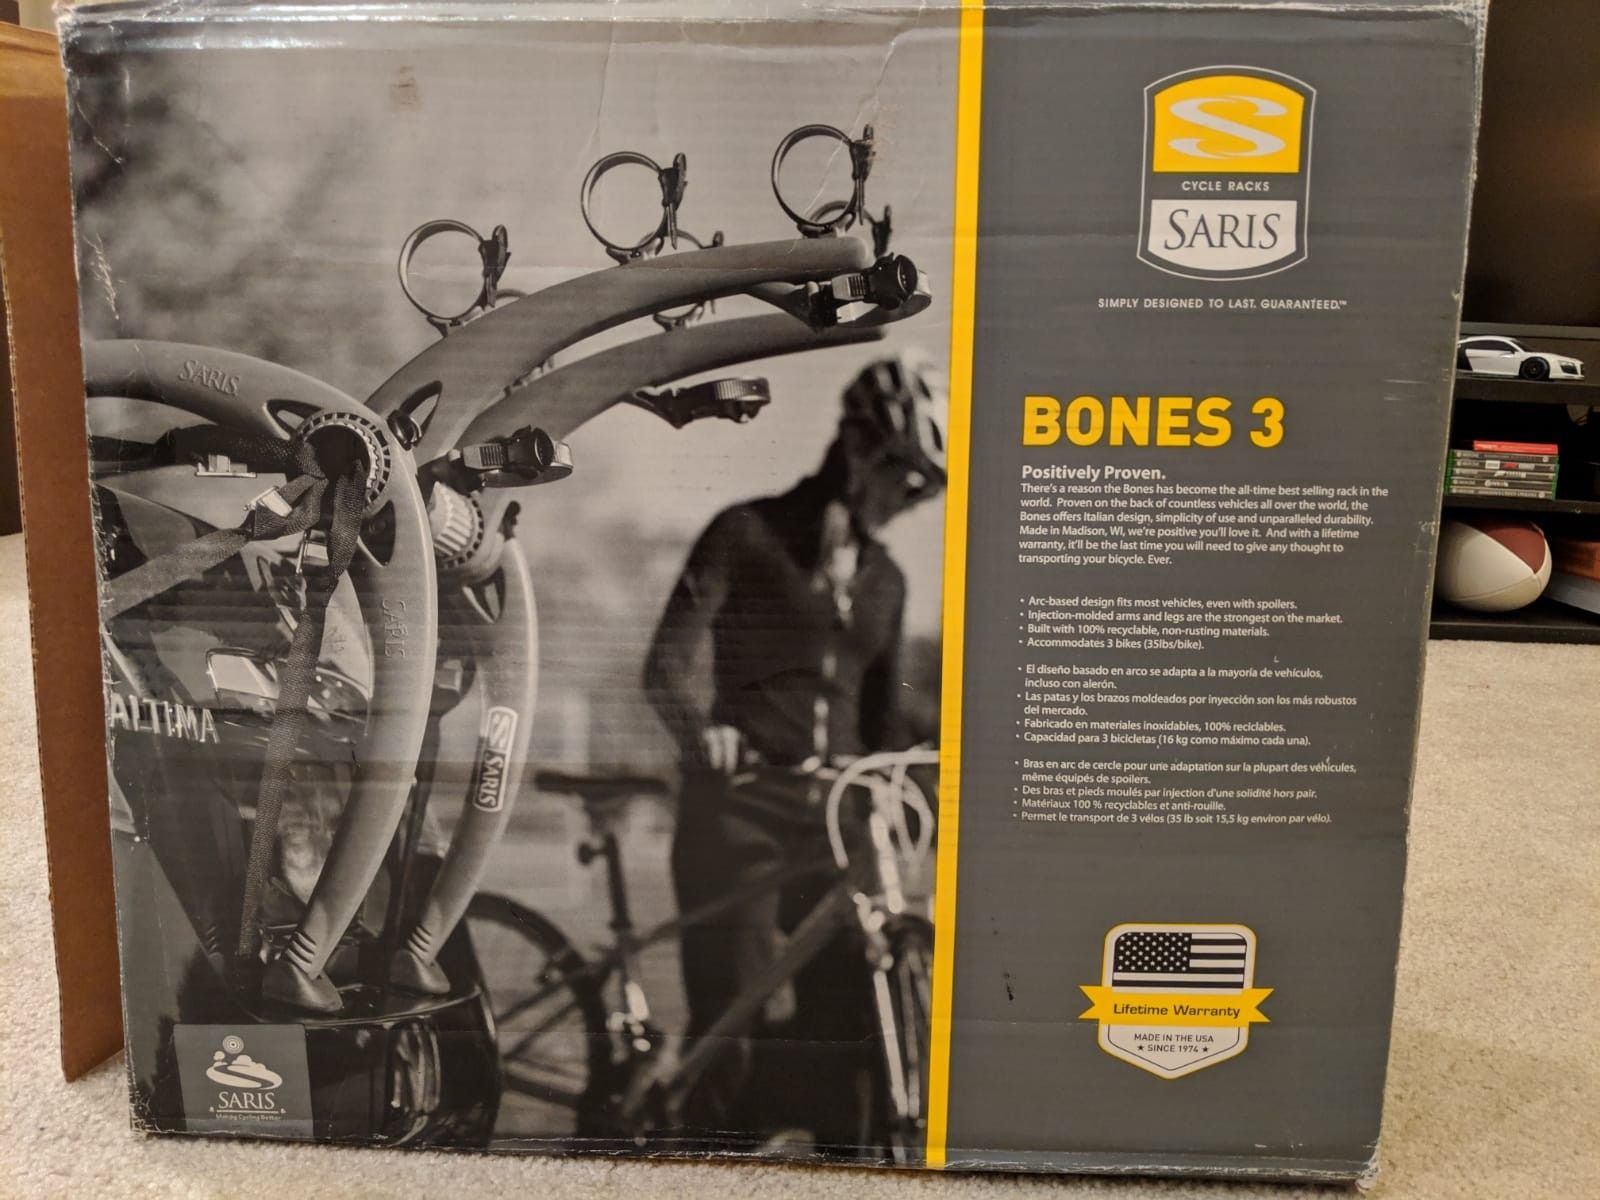 Saris bones 3 bike rack